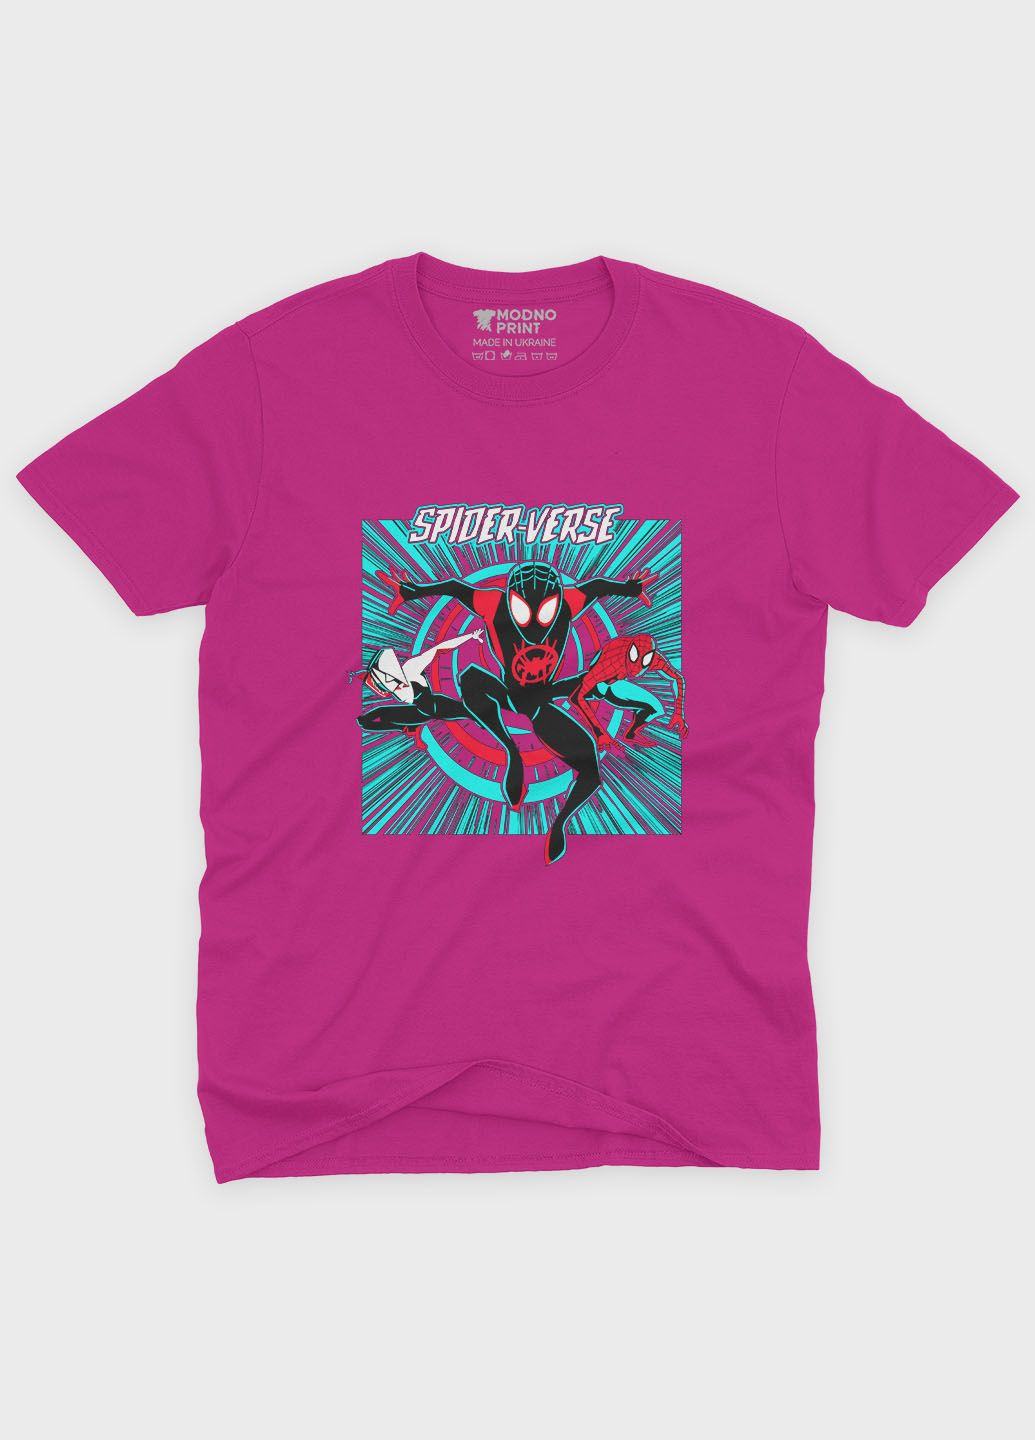 Розовая демисезонная футболка для девочки с принтом супергероя - человек-паук (ts001-1-fuxj-006-014-055-g) Modno